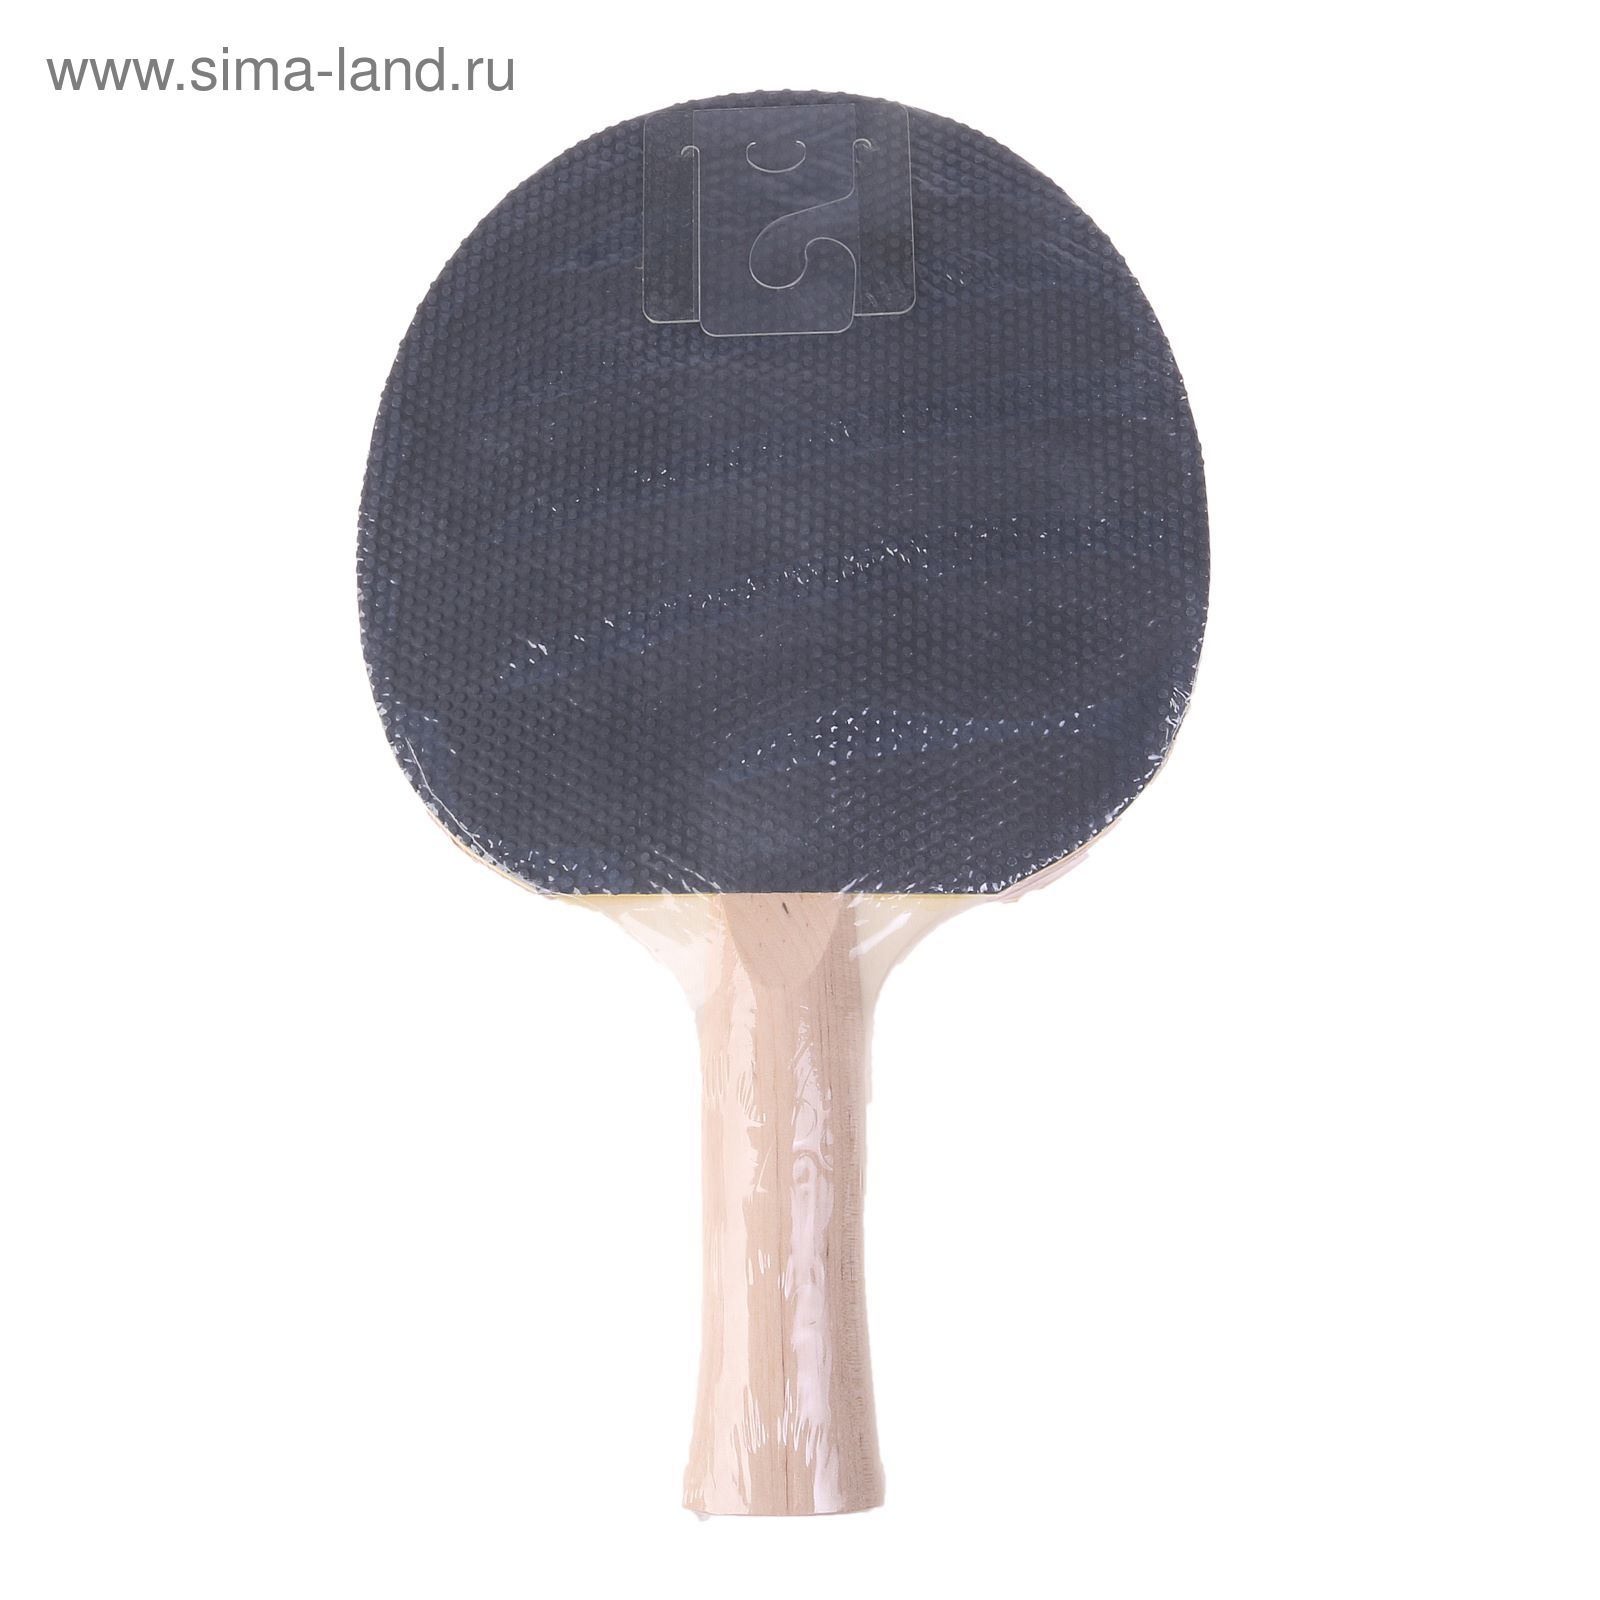 Ракетка для настольного тенниса Stiga Power, для начинающих